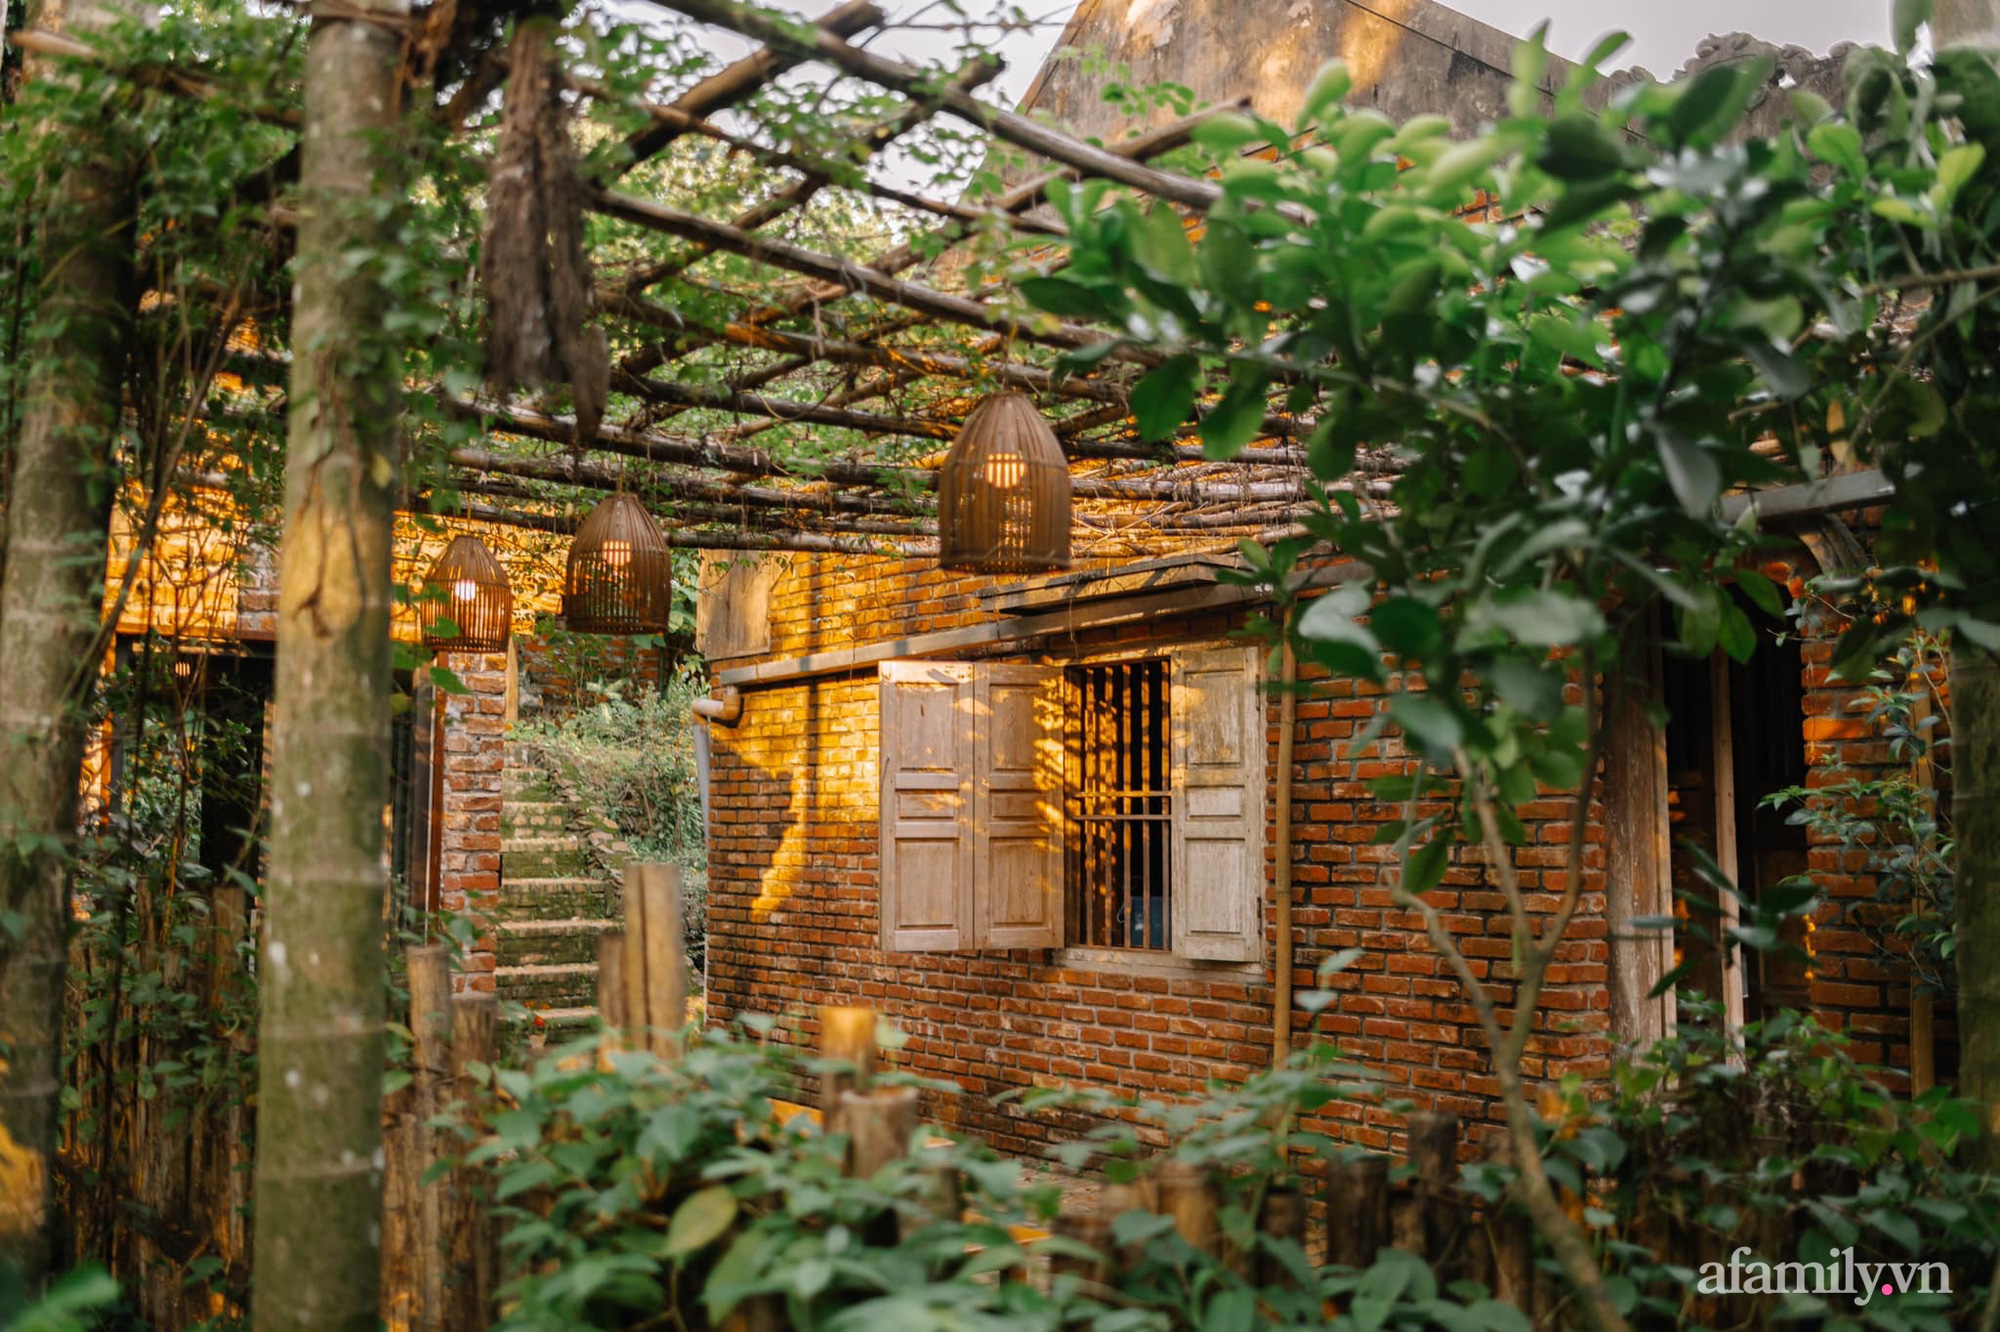 Cuộc sống yên bình trong ngôi nhà nhỏ cùng khu vườn xanh mát bóng cây ở ngoại thành Hà Nội - Ảnh 10.